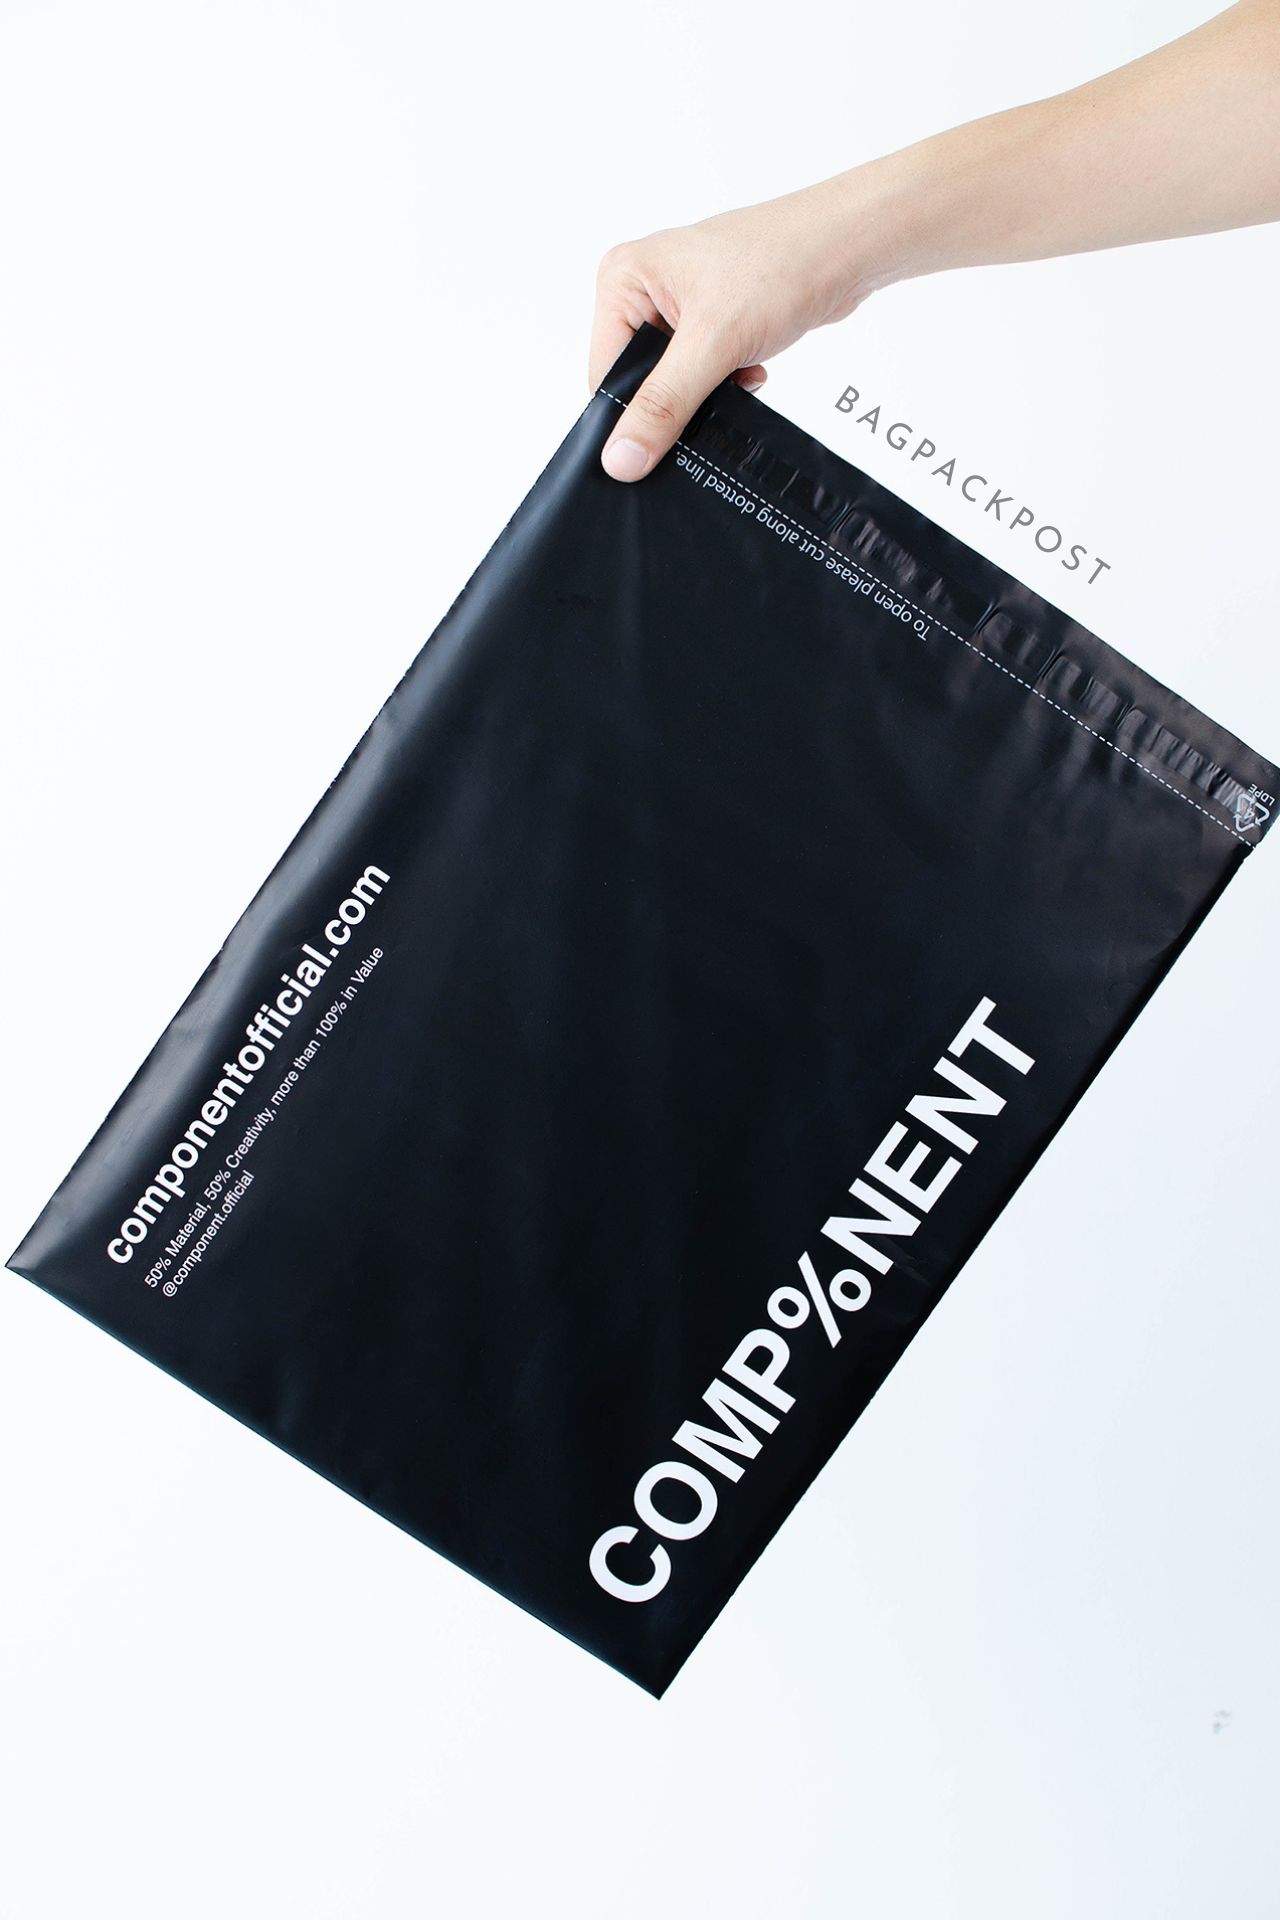 ผลิตถุงไปรษณีย์ ซองไปรษณีย์พิมพ์ลาย แบรนด์ Component ซองไปรษณีย์สีดำ ถุงไปรษณีย์พิมพ์ลาย 1 BagPackPost